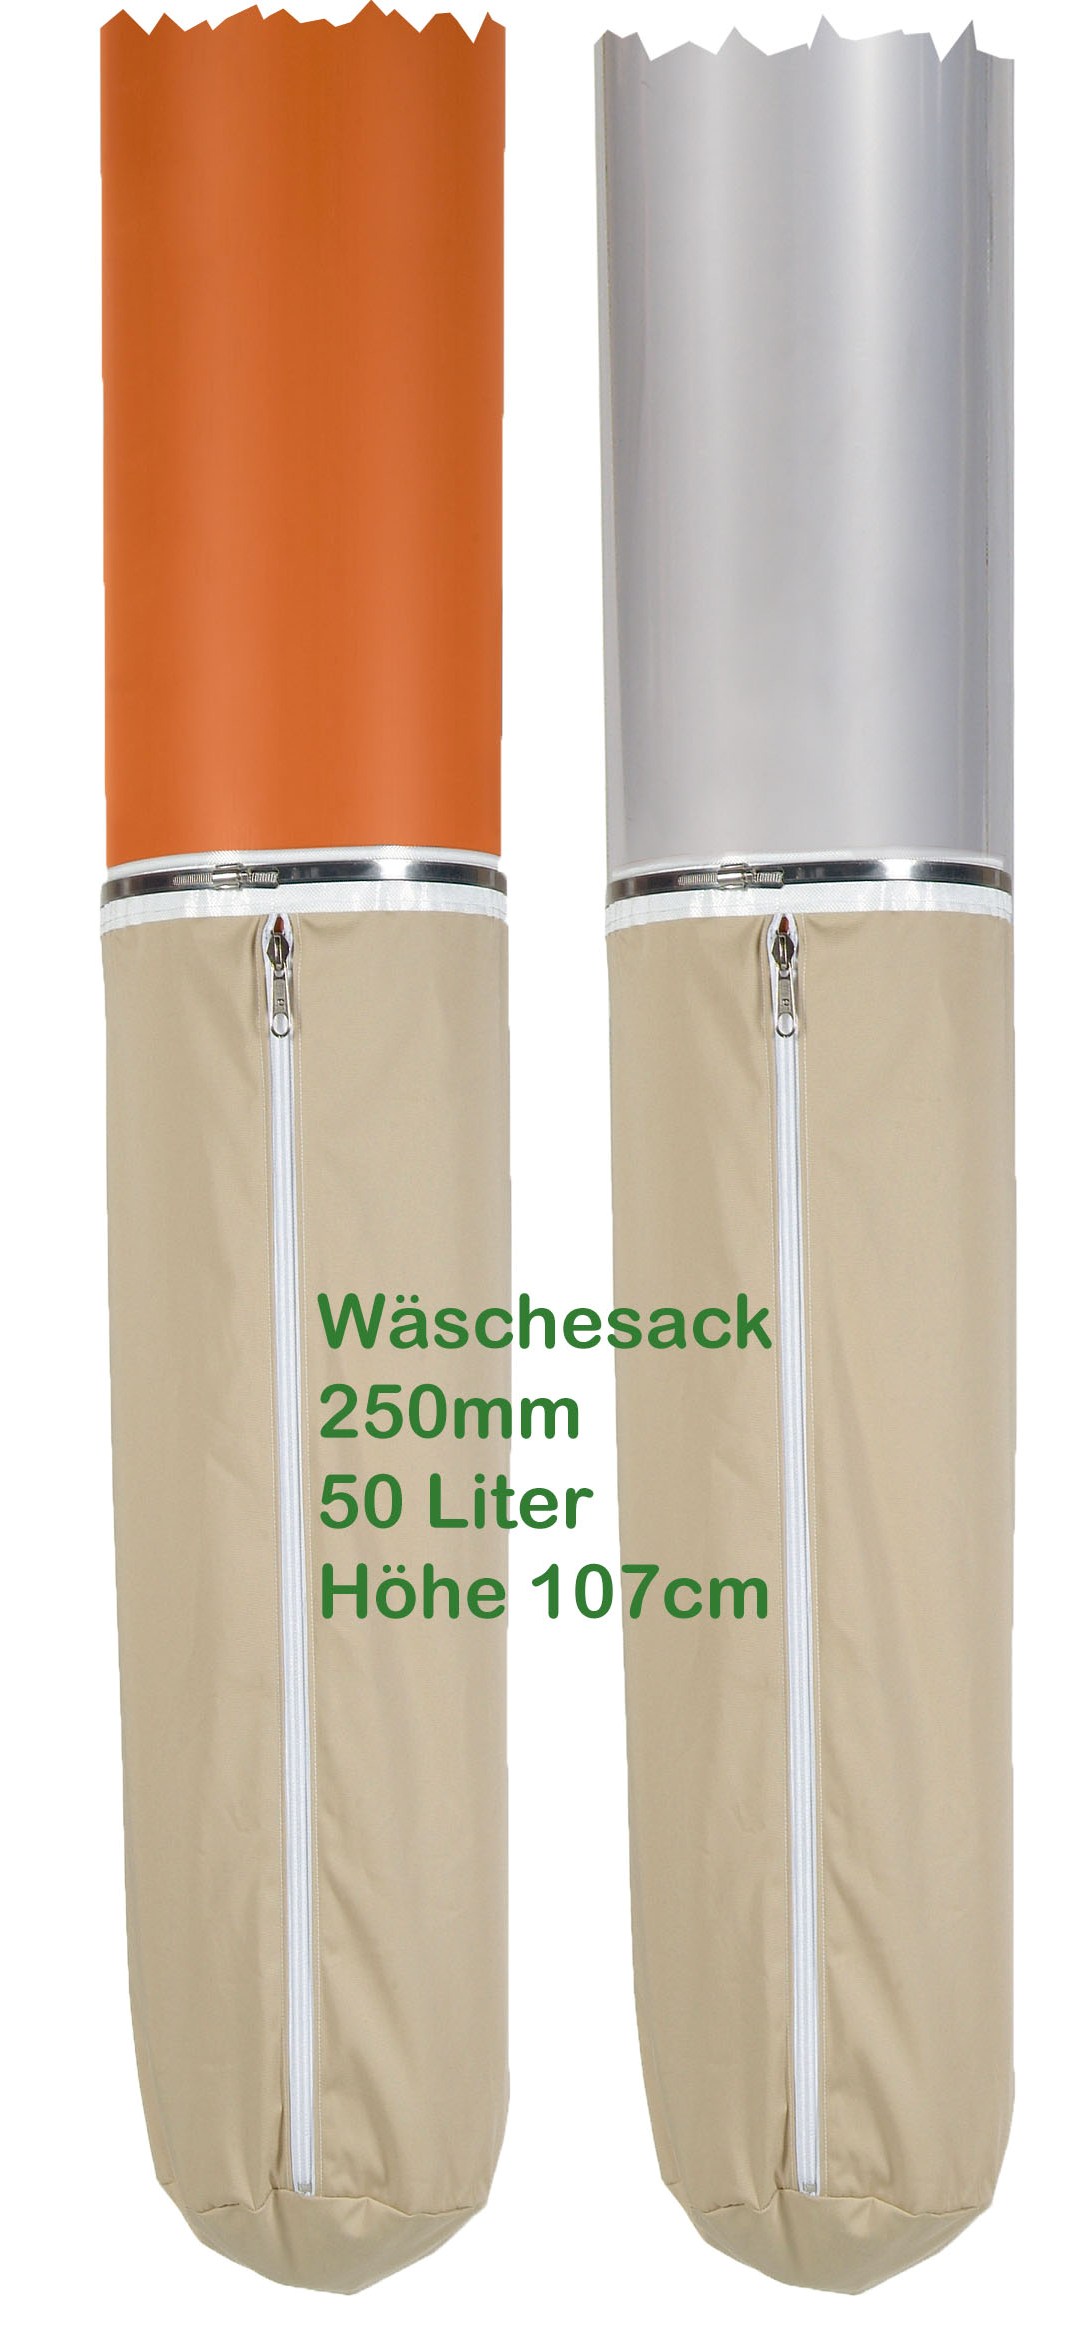 Wäschesack für Rohrende mit 250 mm, 50 Liter